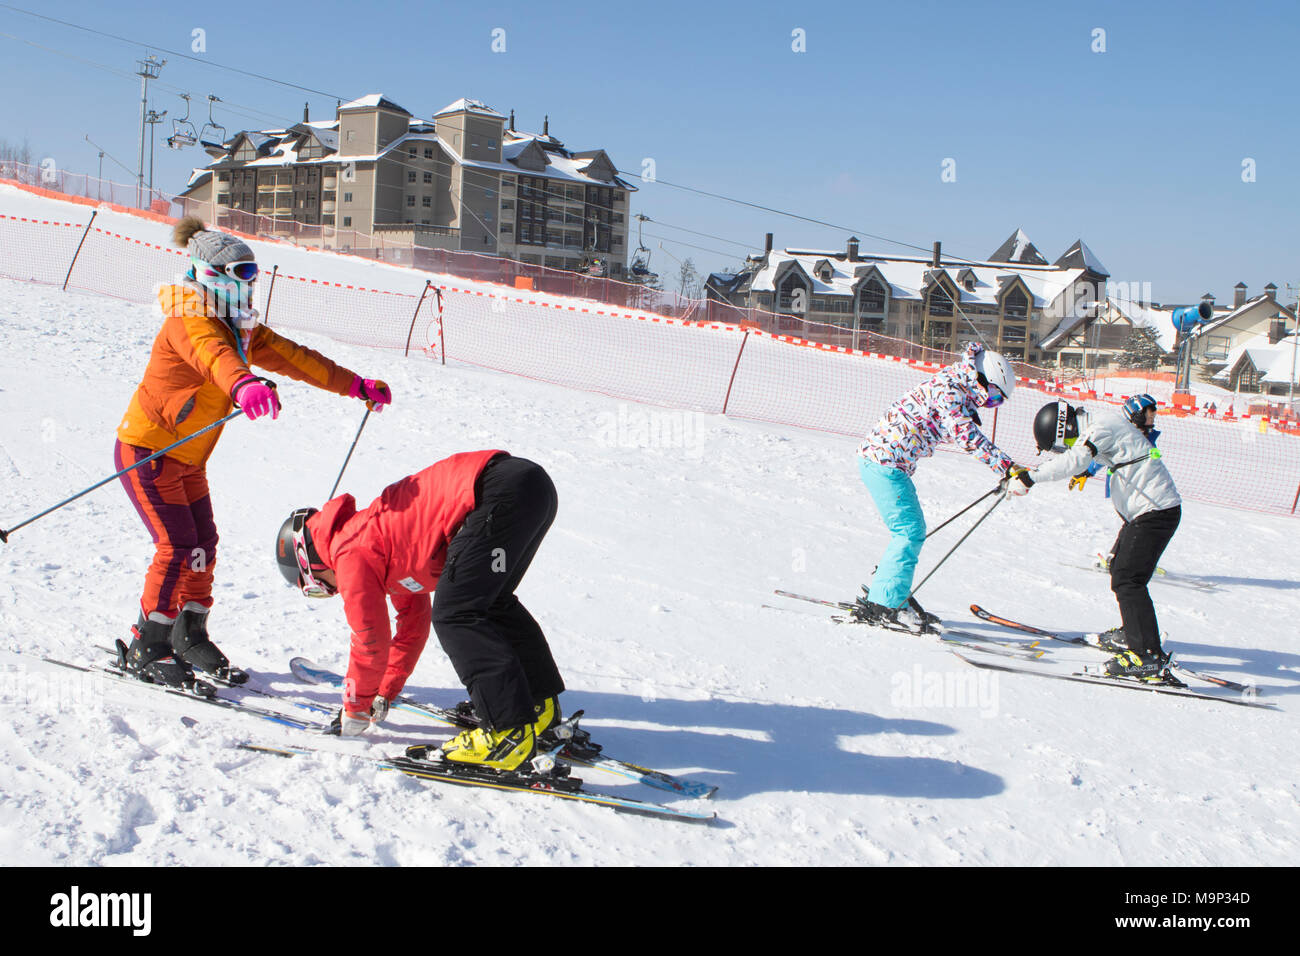 Dos mujeres se les enseña a esquiar en una suave pendiente de esquí de Alpensia resort en la región de Gangwon-do de Corea del Sur. El Alpensia Resort es un resort de esquí y una atracción turística. Está ubicado en el territorio del municipio de Daegwallyeong-myeon, en el condado de Pyeongchang, acoger los Juegos Olímpicos de Invierno en febrero de 2018. La estación de esquí es de aproximadamente 2,5 horas de Seúl o Incheon Airport en coche, predominantemente todo autopista. Alpensia tiene seis pistas para el esquí y el snowboard, con carreras de hasta 1,4 km (0,87 millas) de largo, para principiantes y esquiadores avanzados, así como una zona reservada para Foto de stock